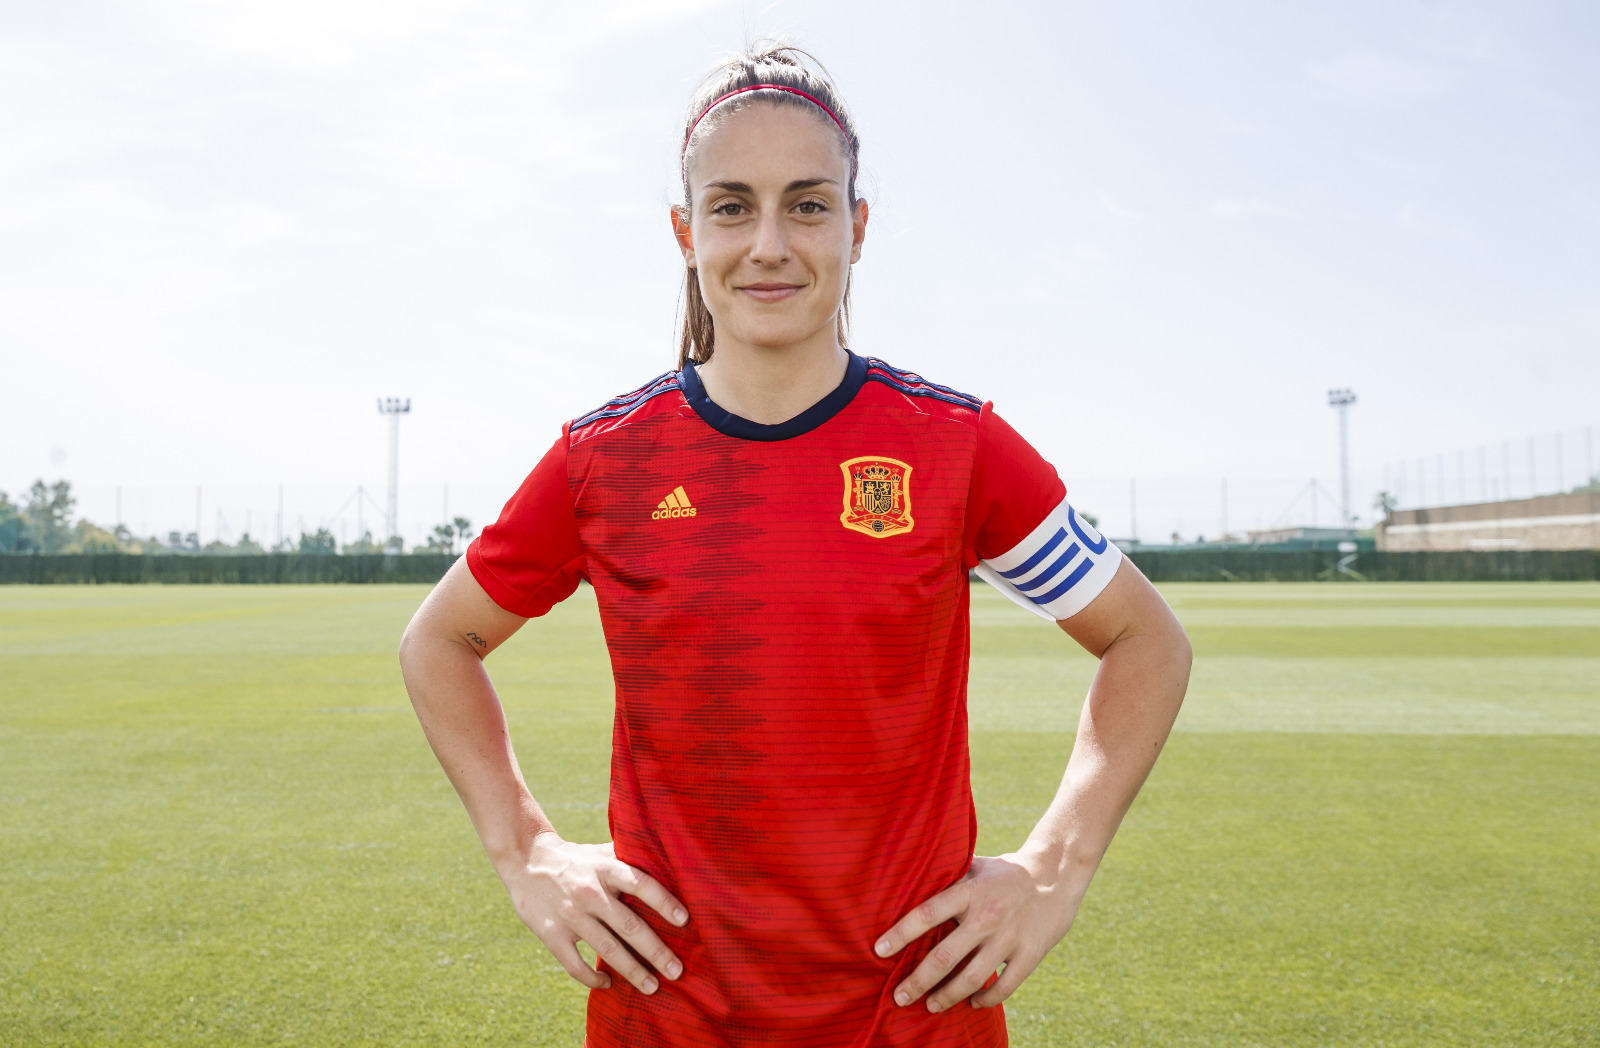 Selección Española Femenina de Fútbol on Twitter: ¡¡QUÉ ORGULLO!! 🏆 @alexiaputellas, futbolista del @FCBfemeni y la @SeFutbolFem, ha sido elegida 'MEJOR JUGADORA de EUROPA'. 🤩 La 1ª española en recibir este